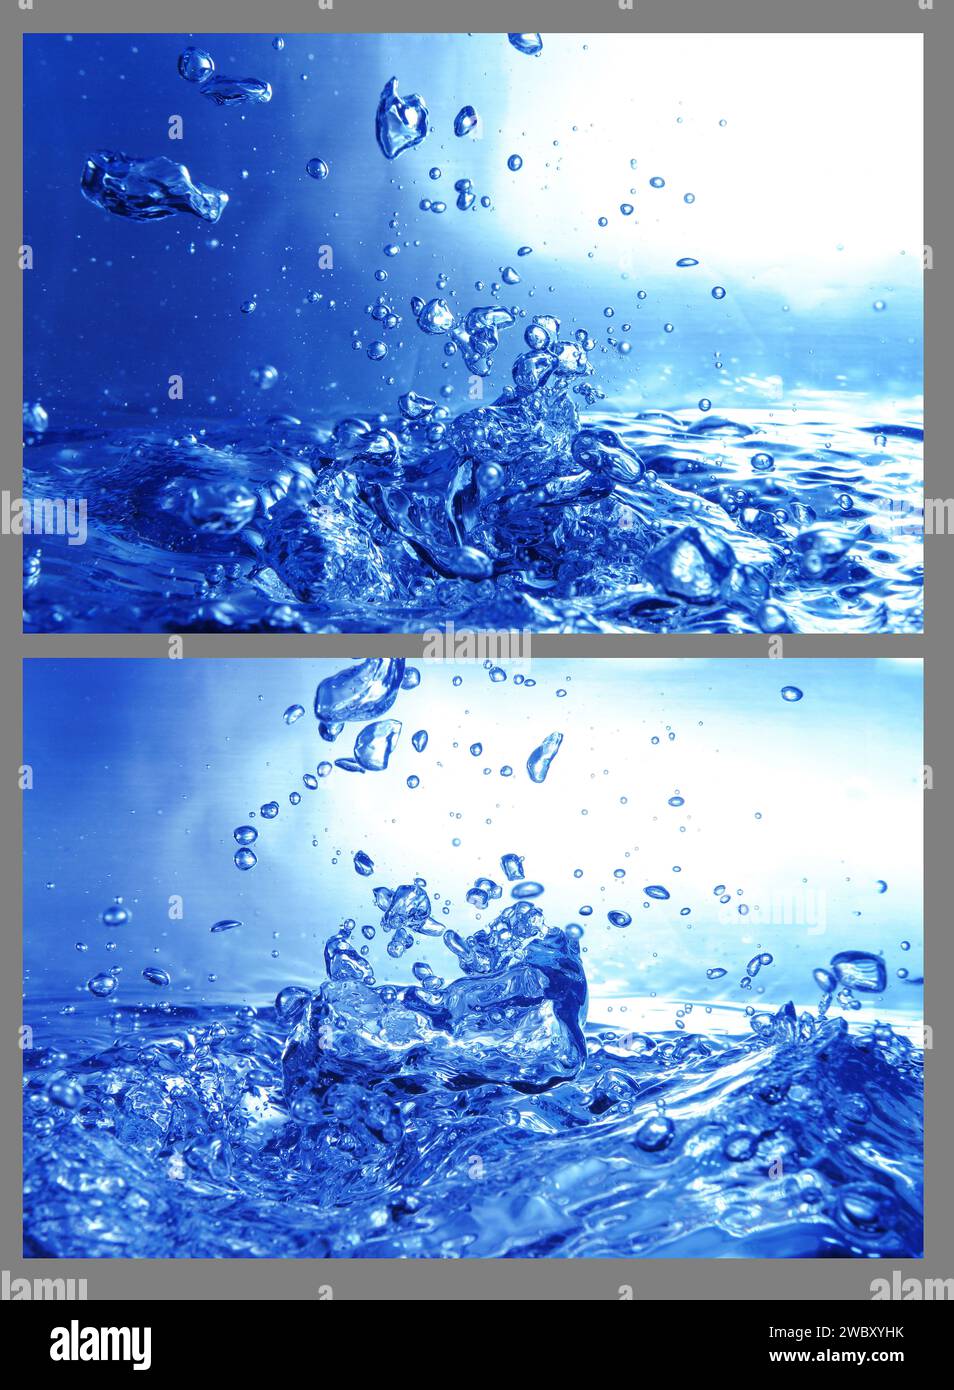 primo piano, macro di molte bolle d'aria sott'acqua in un acquario, sfondo blu Foto Stock